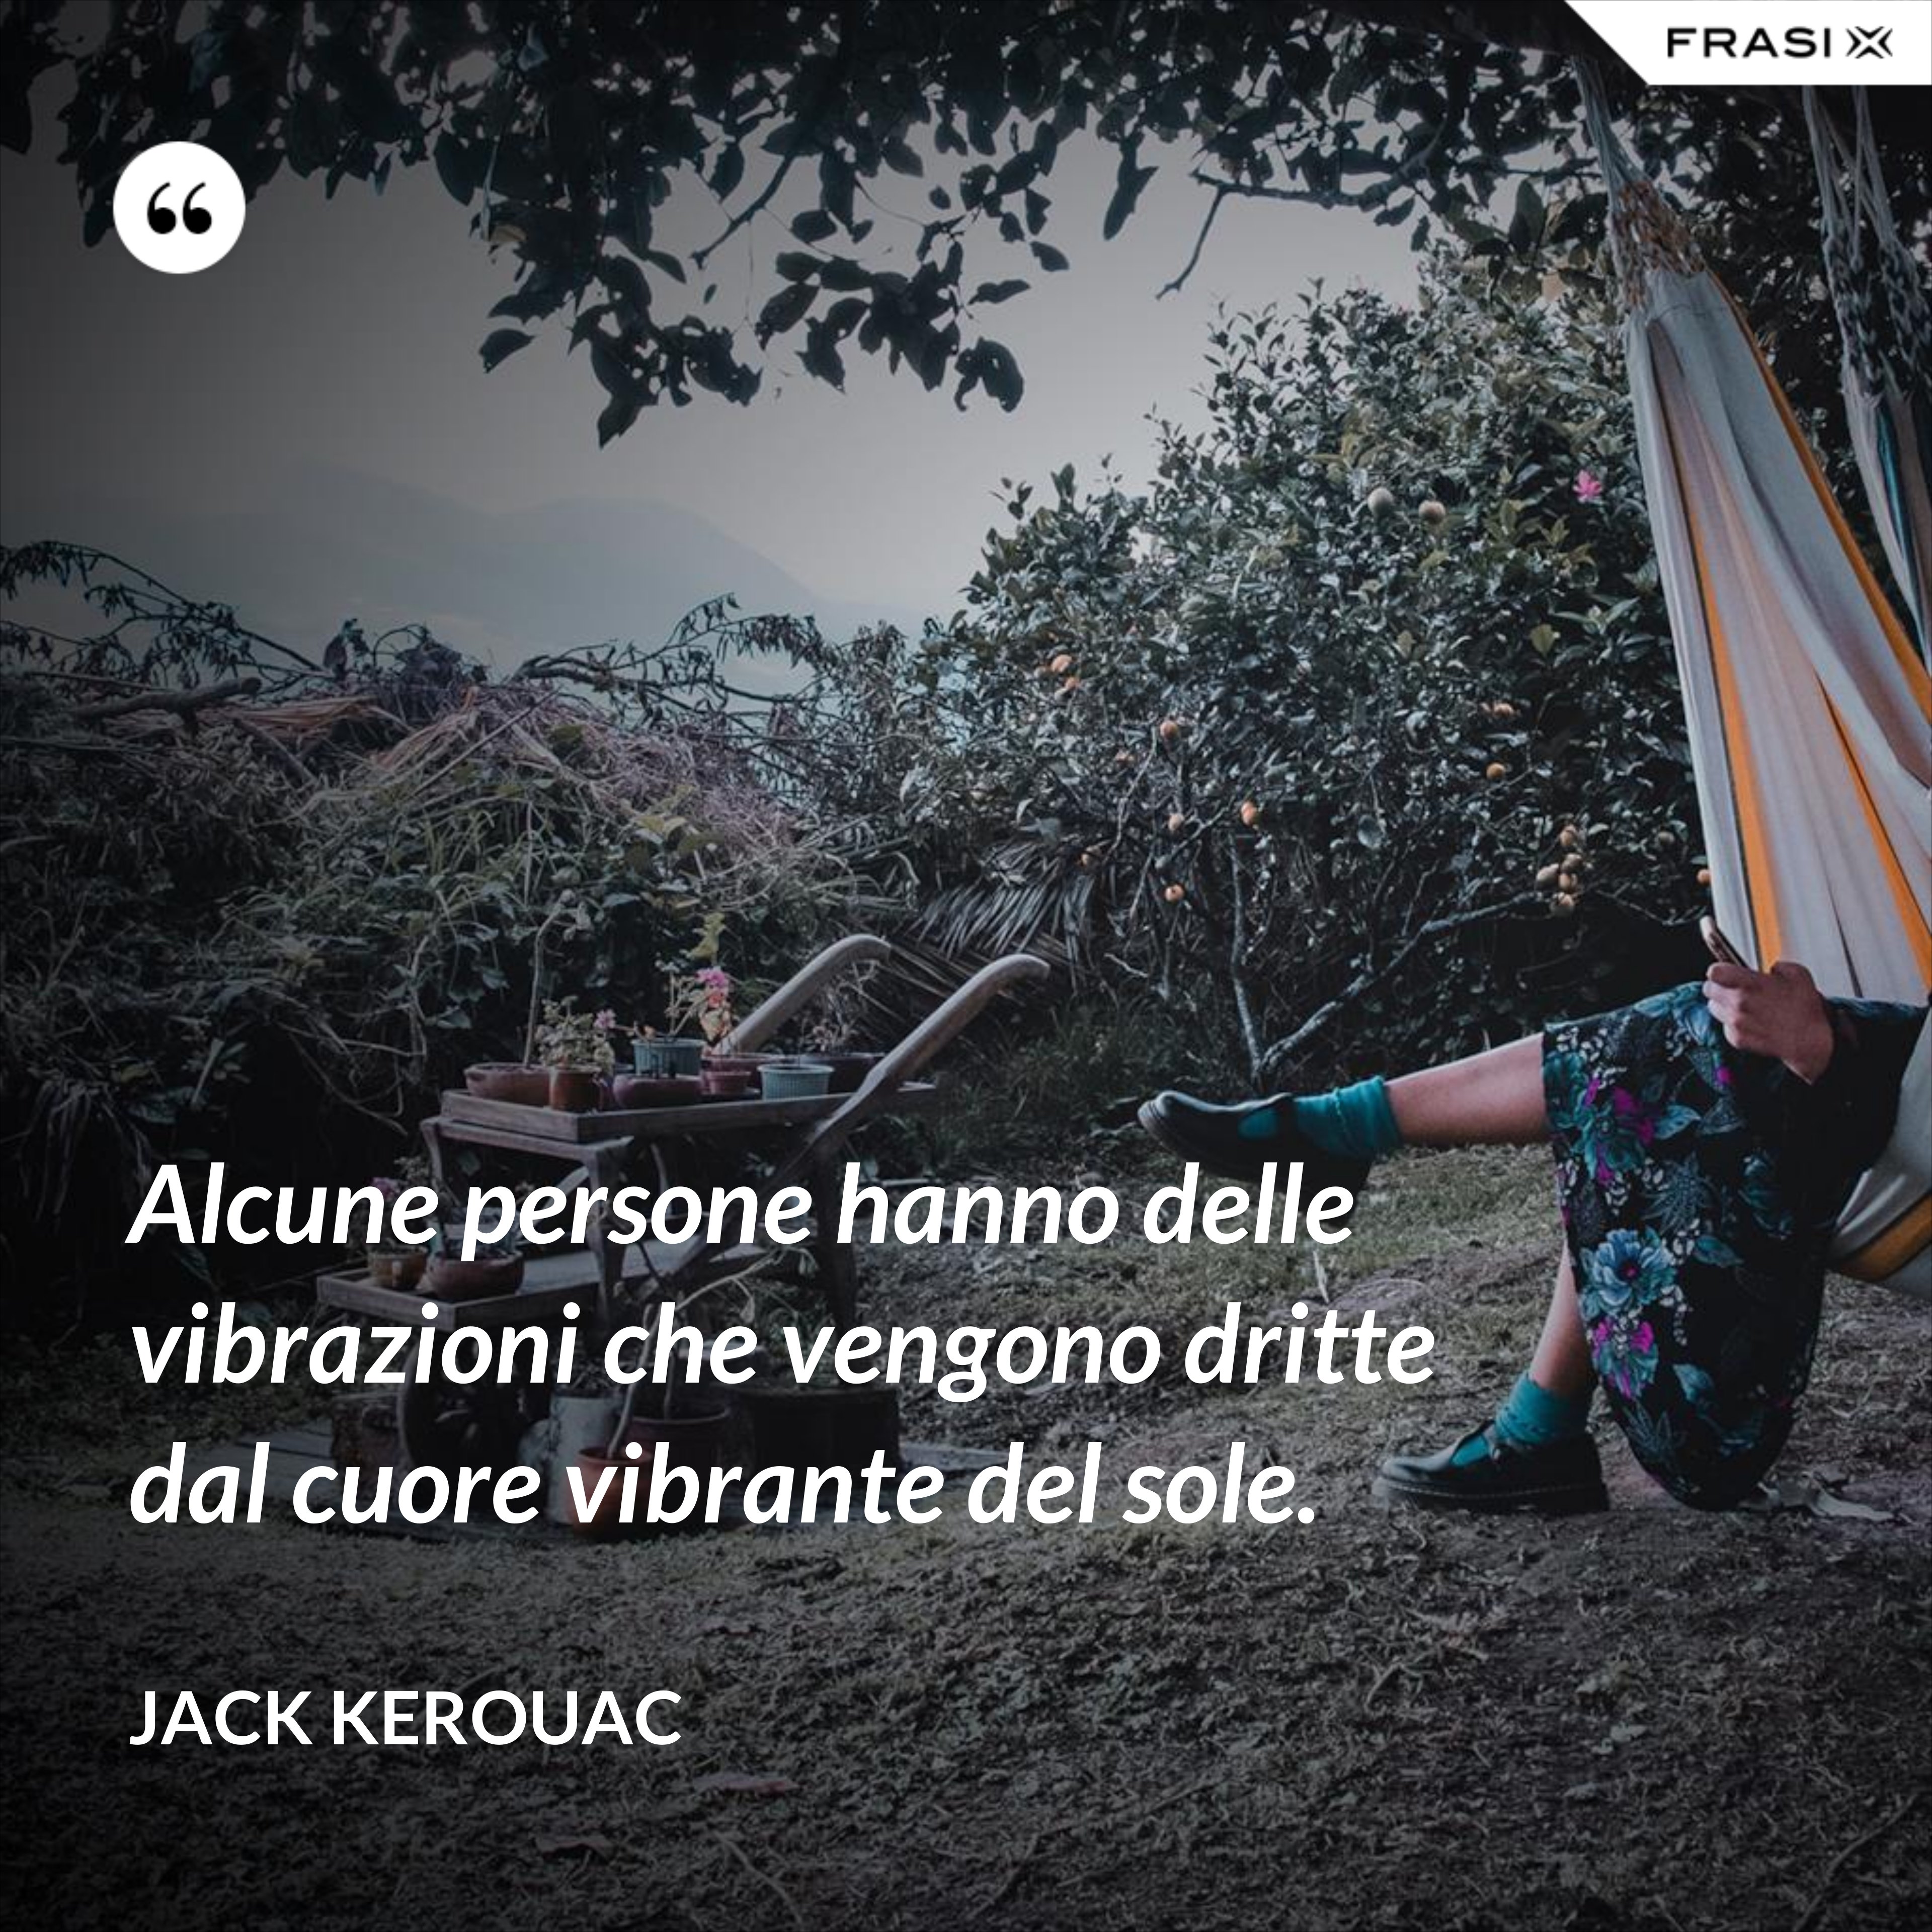 Alcune persone hanno delle vibrazioni che vengono dritte dal cuore vibrante del sole. - Jack Kerouac